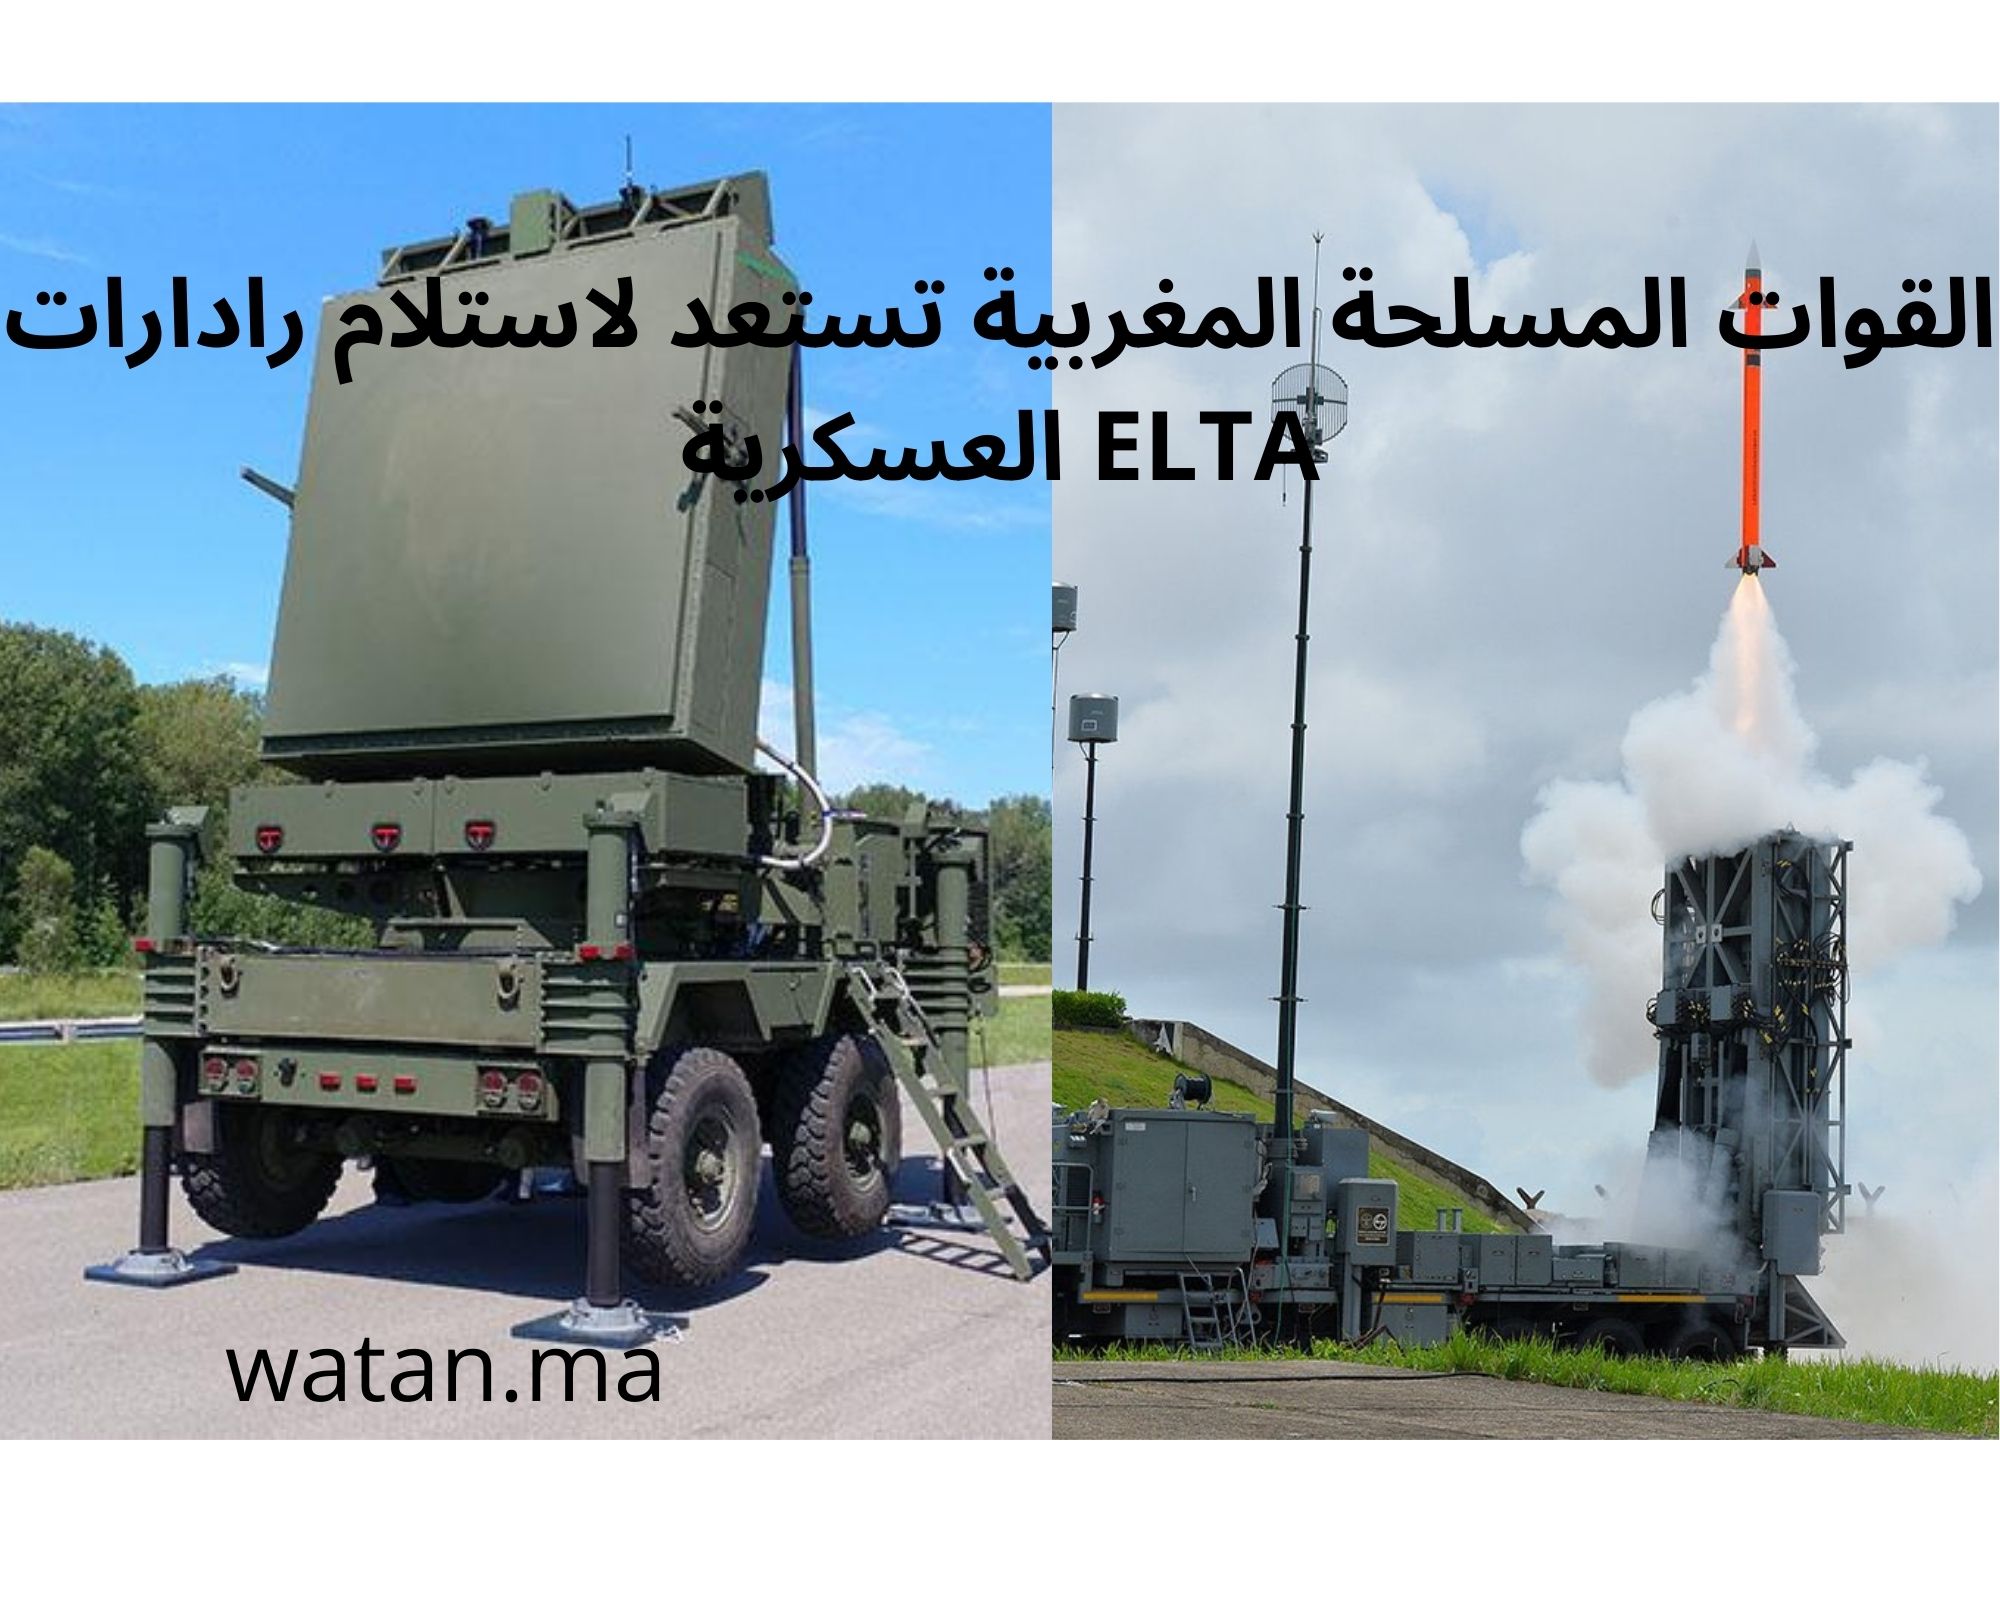 القوات المسلحة المغربية تستعد لاستلام رادارات ELTA العسكرية وأنظمة “باراك 8” الصاروخية المتطورة